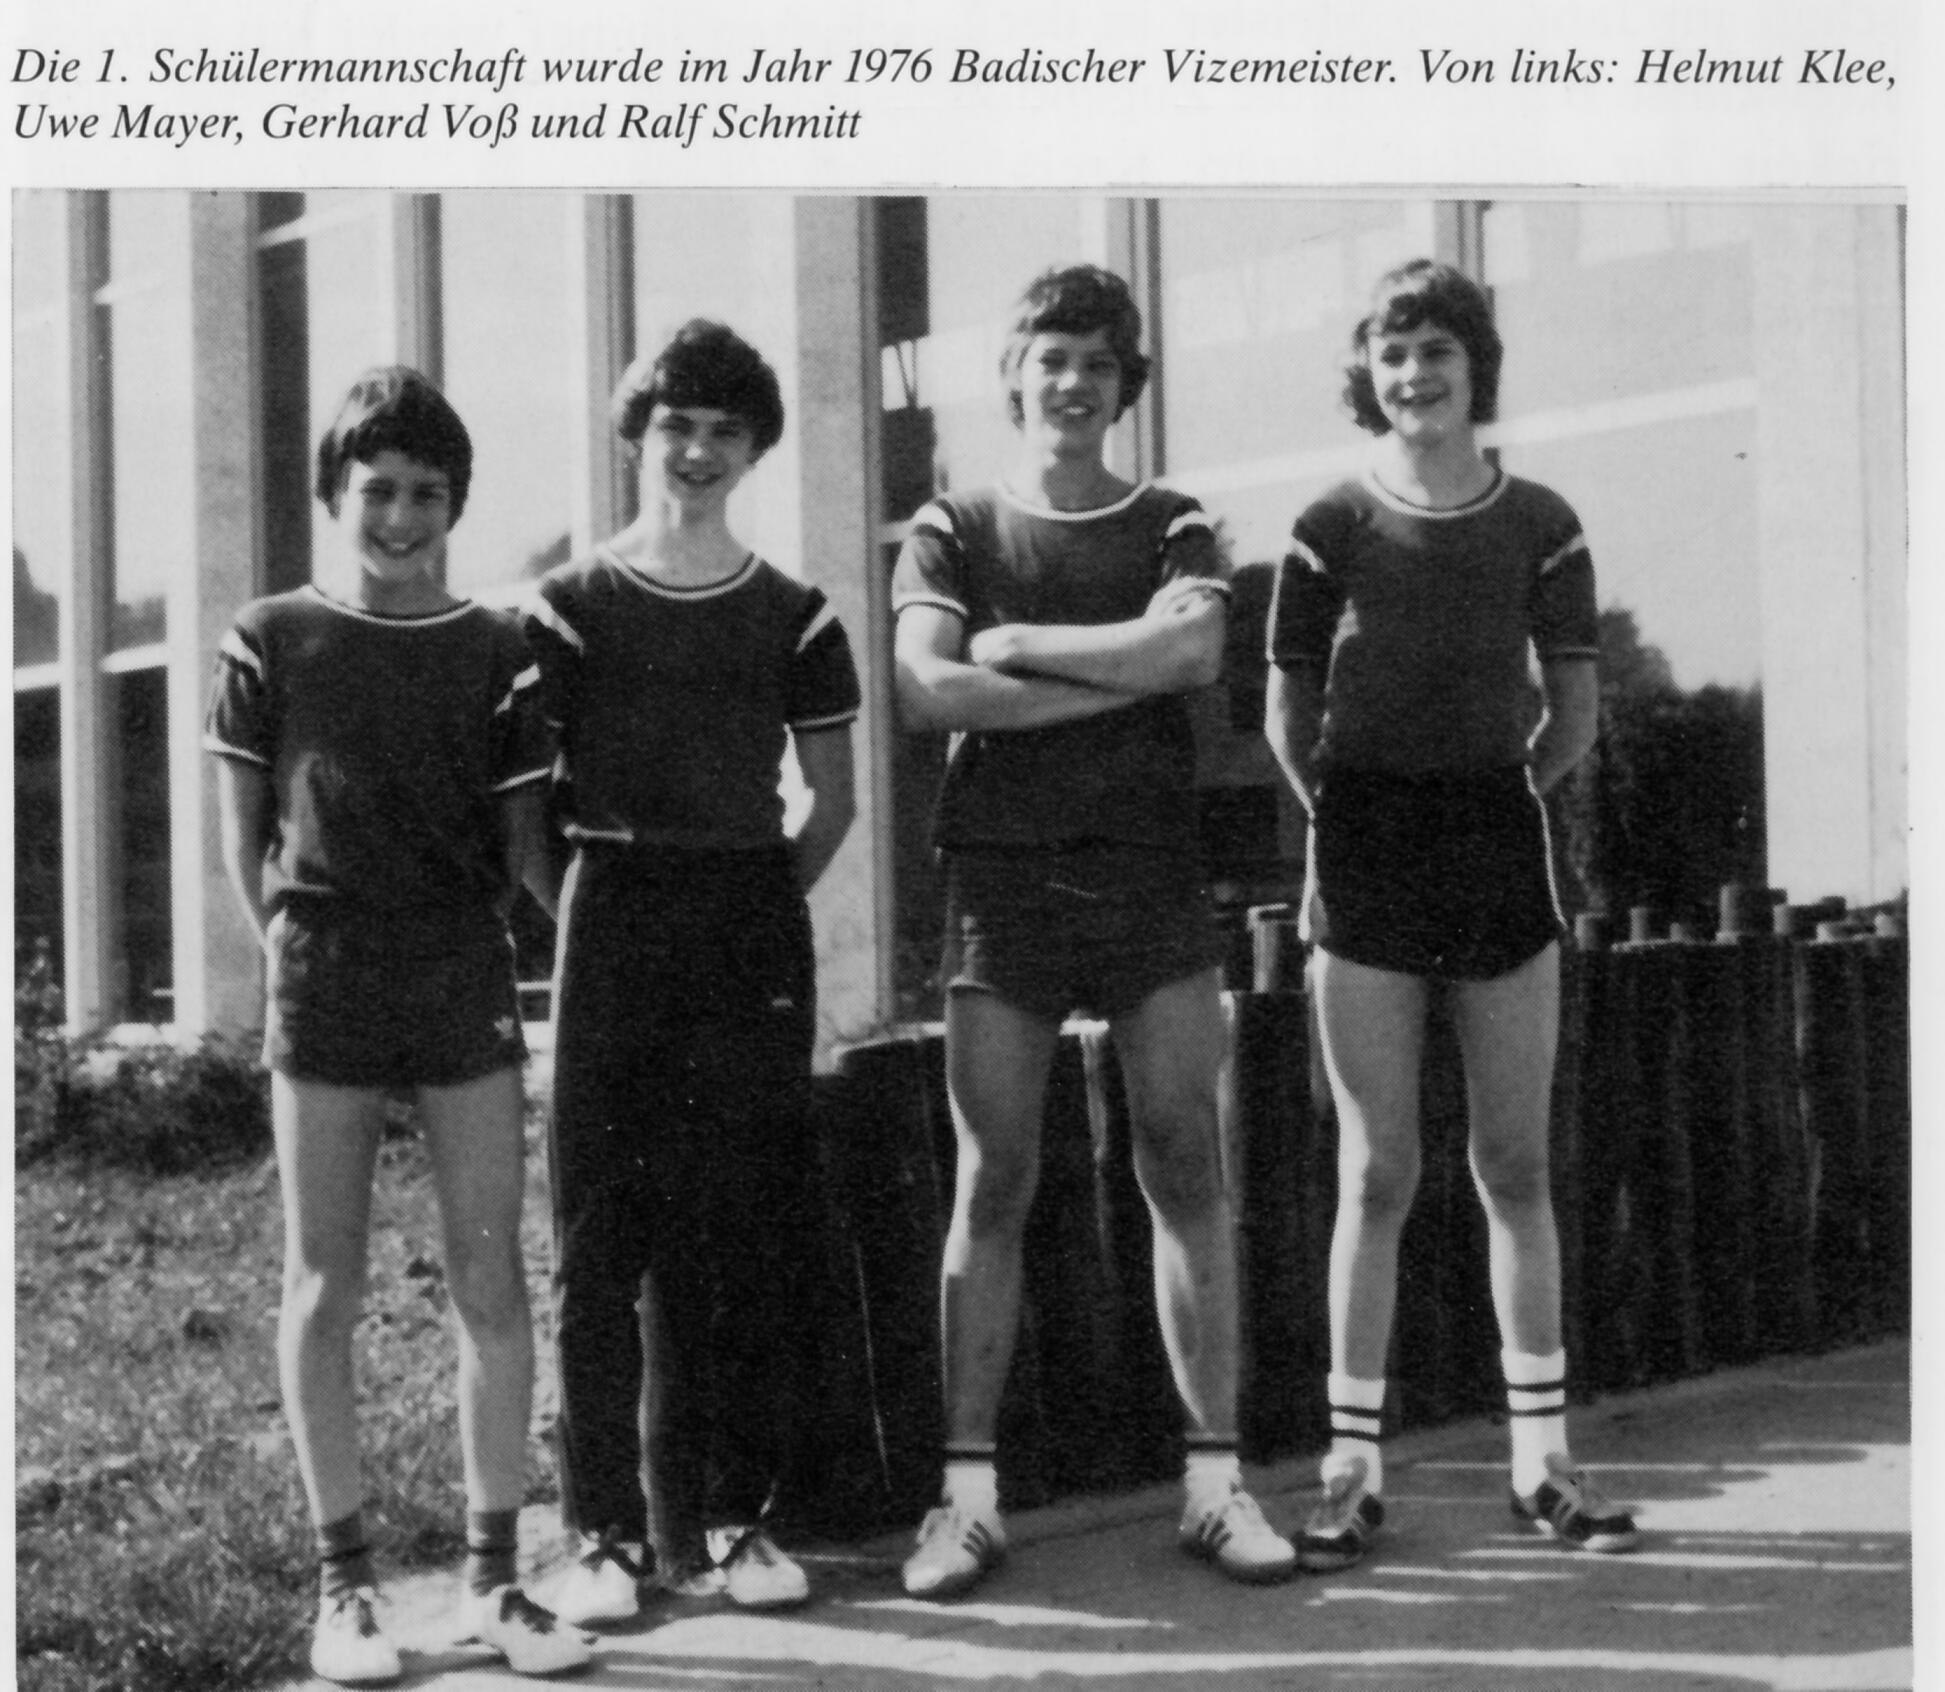 Bad. Schlermeister 1976